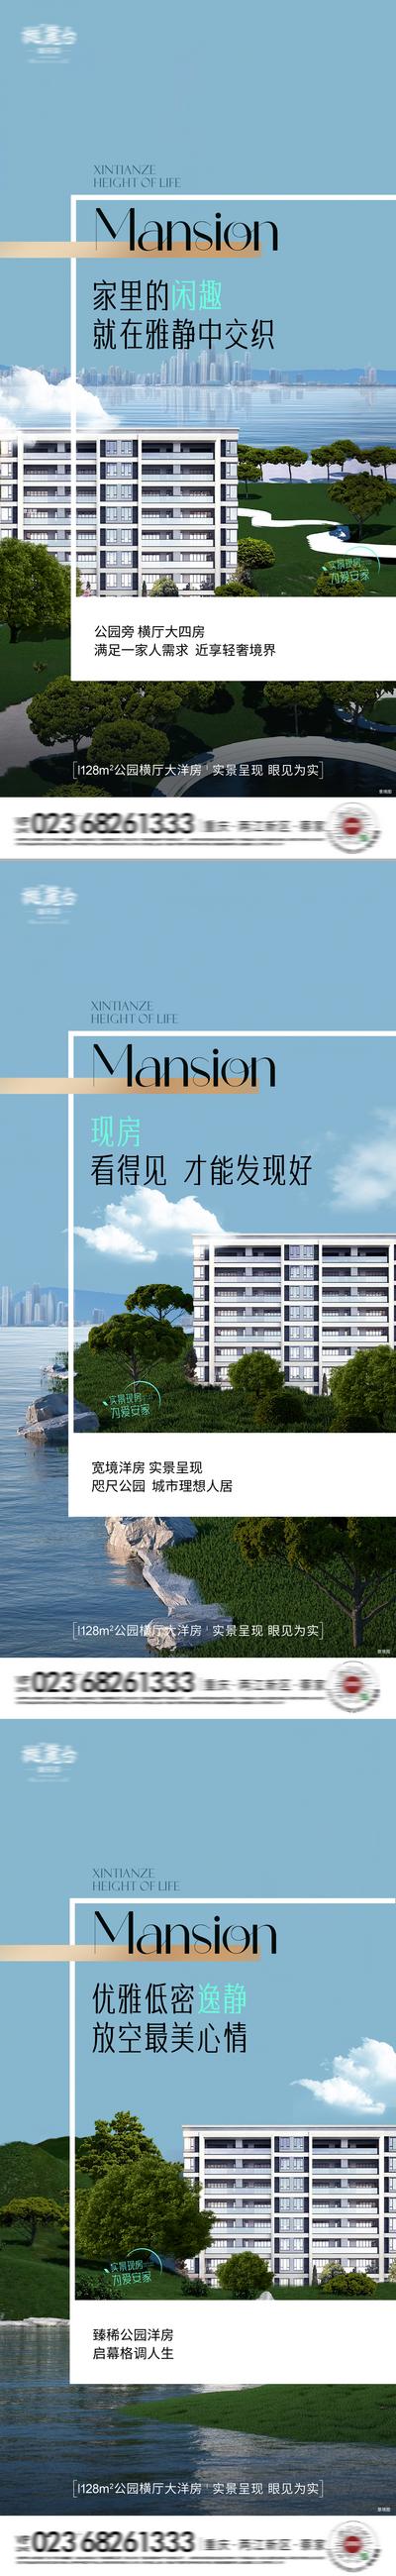 南门网 广告 海报 地产 江景 户型 价值点 系列 洋房 轻奢 环境 配套